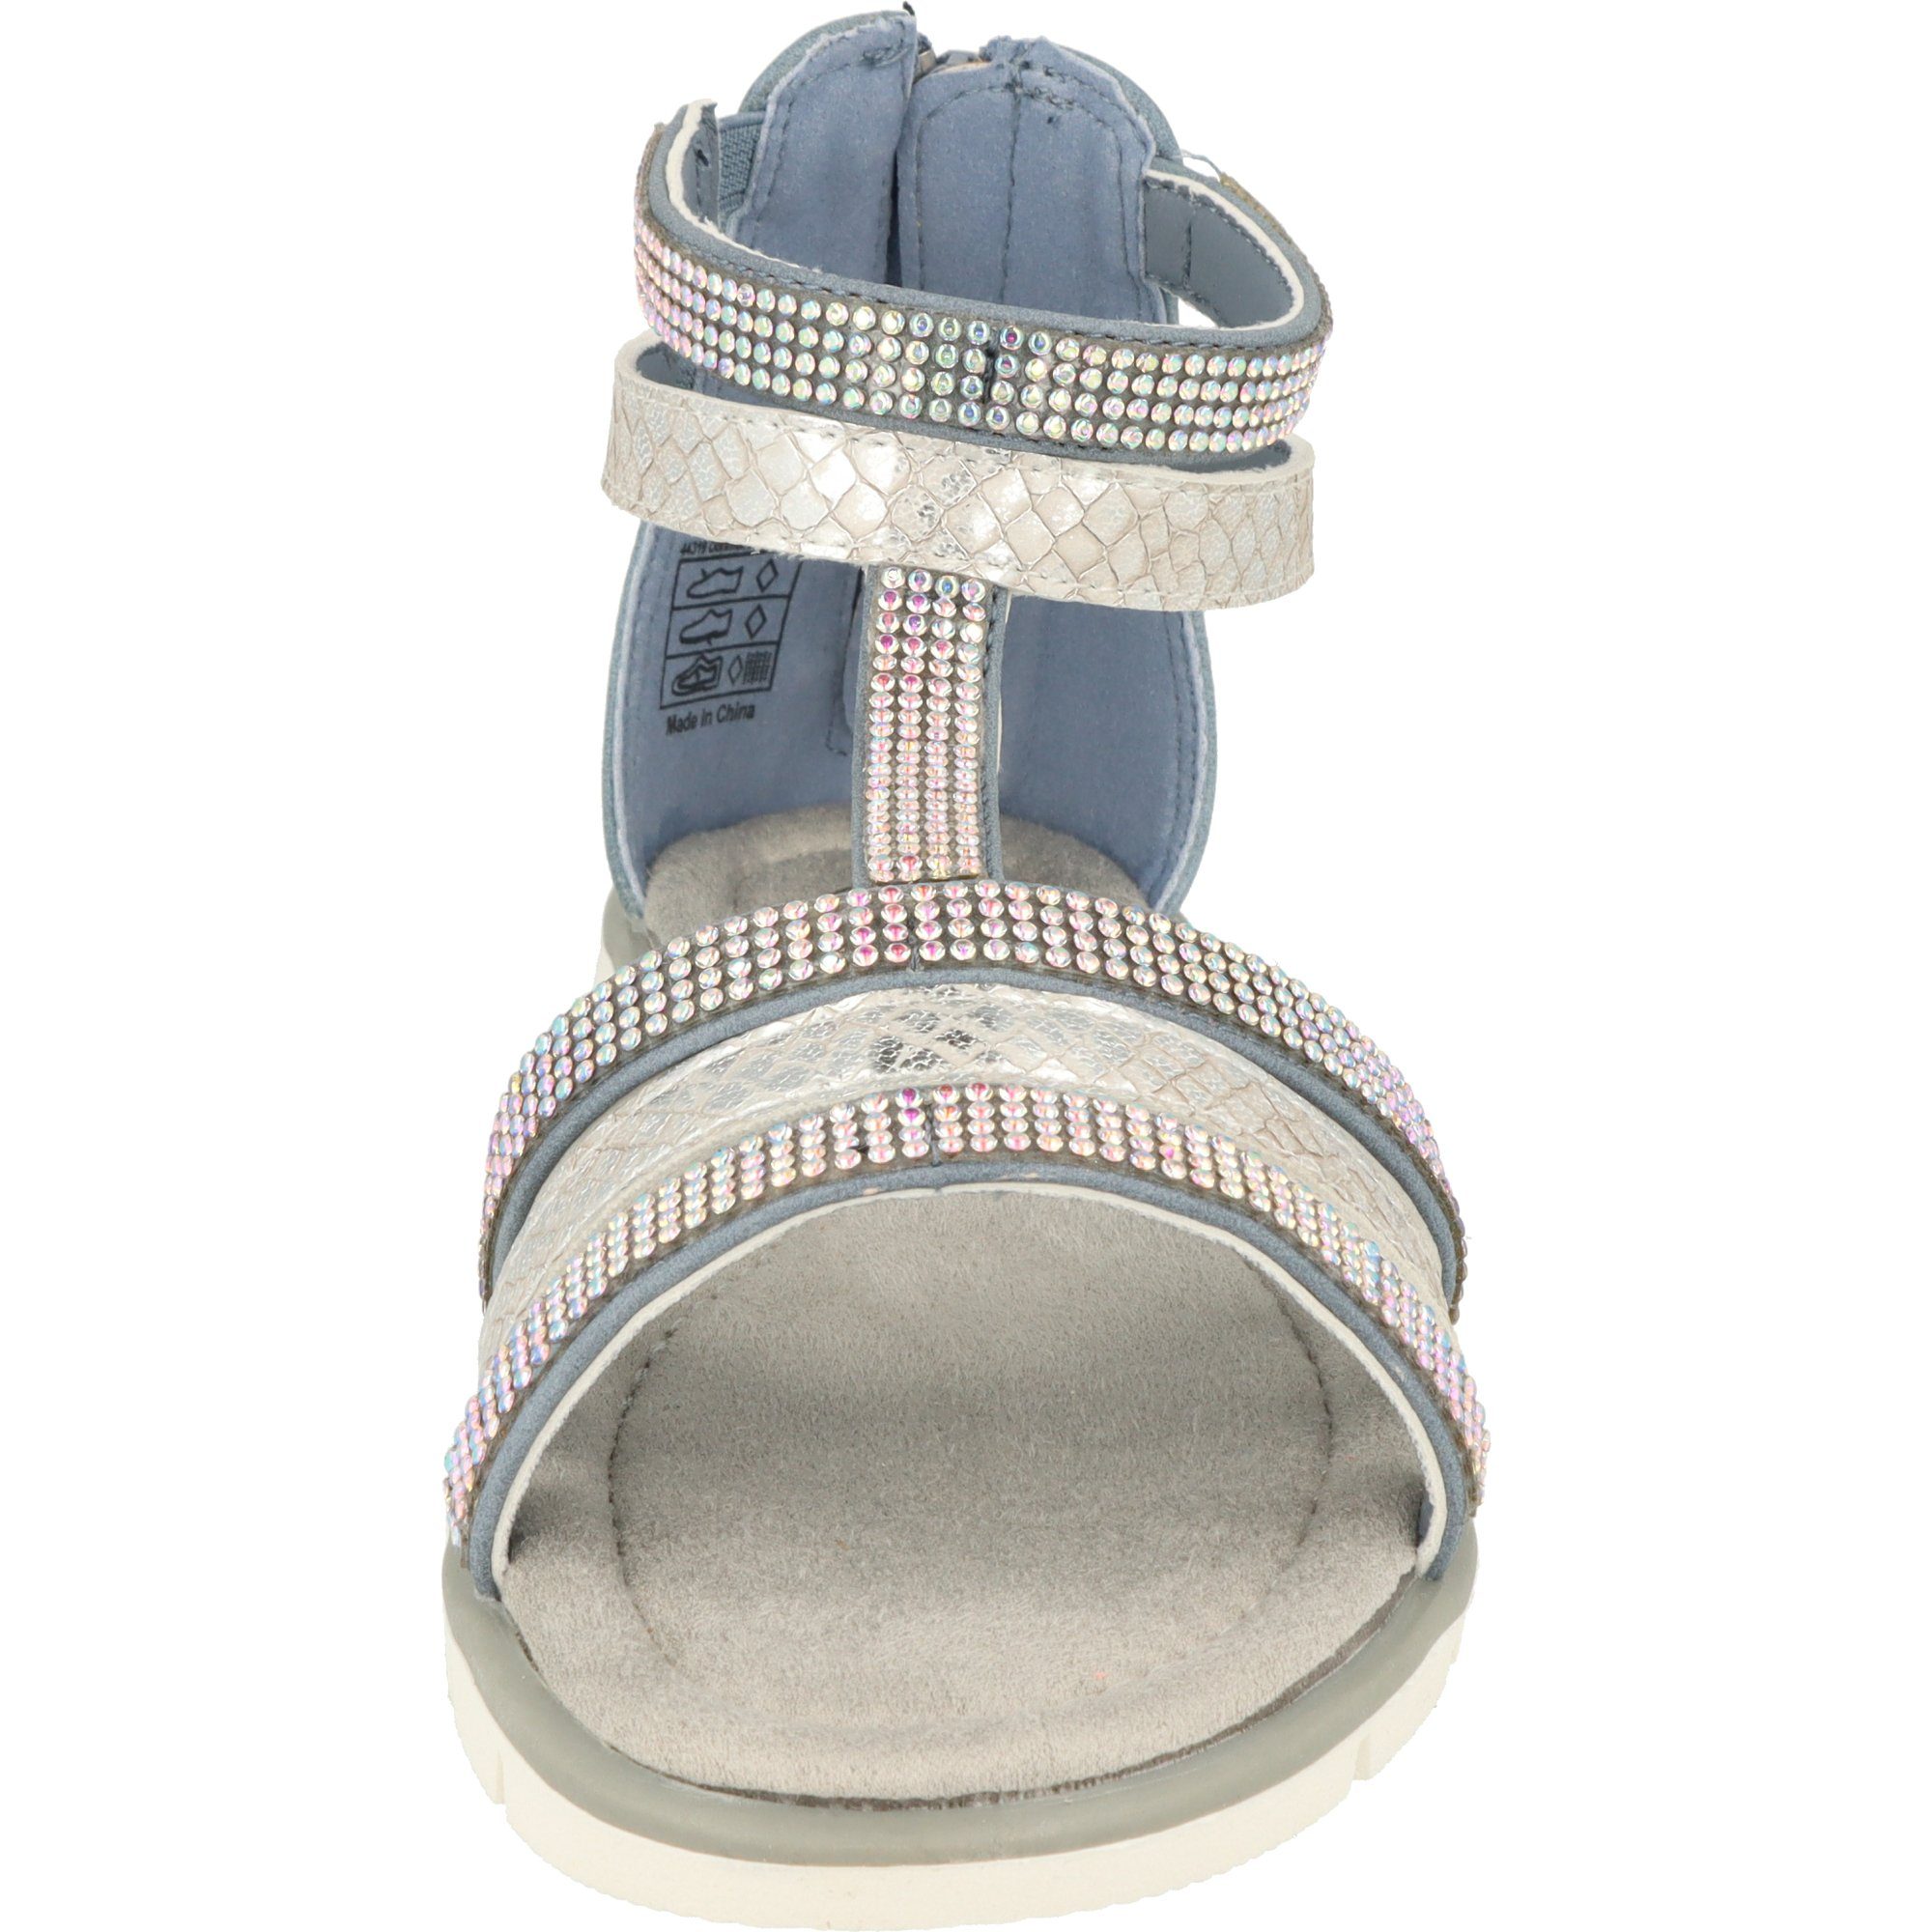 Indigo Mädchen Schuhe 482-380 Sandale mit Glitzersteinen Römersandale Blue Sommer